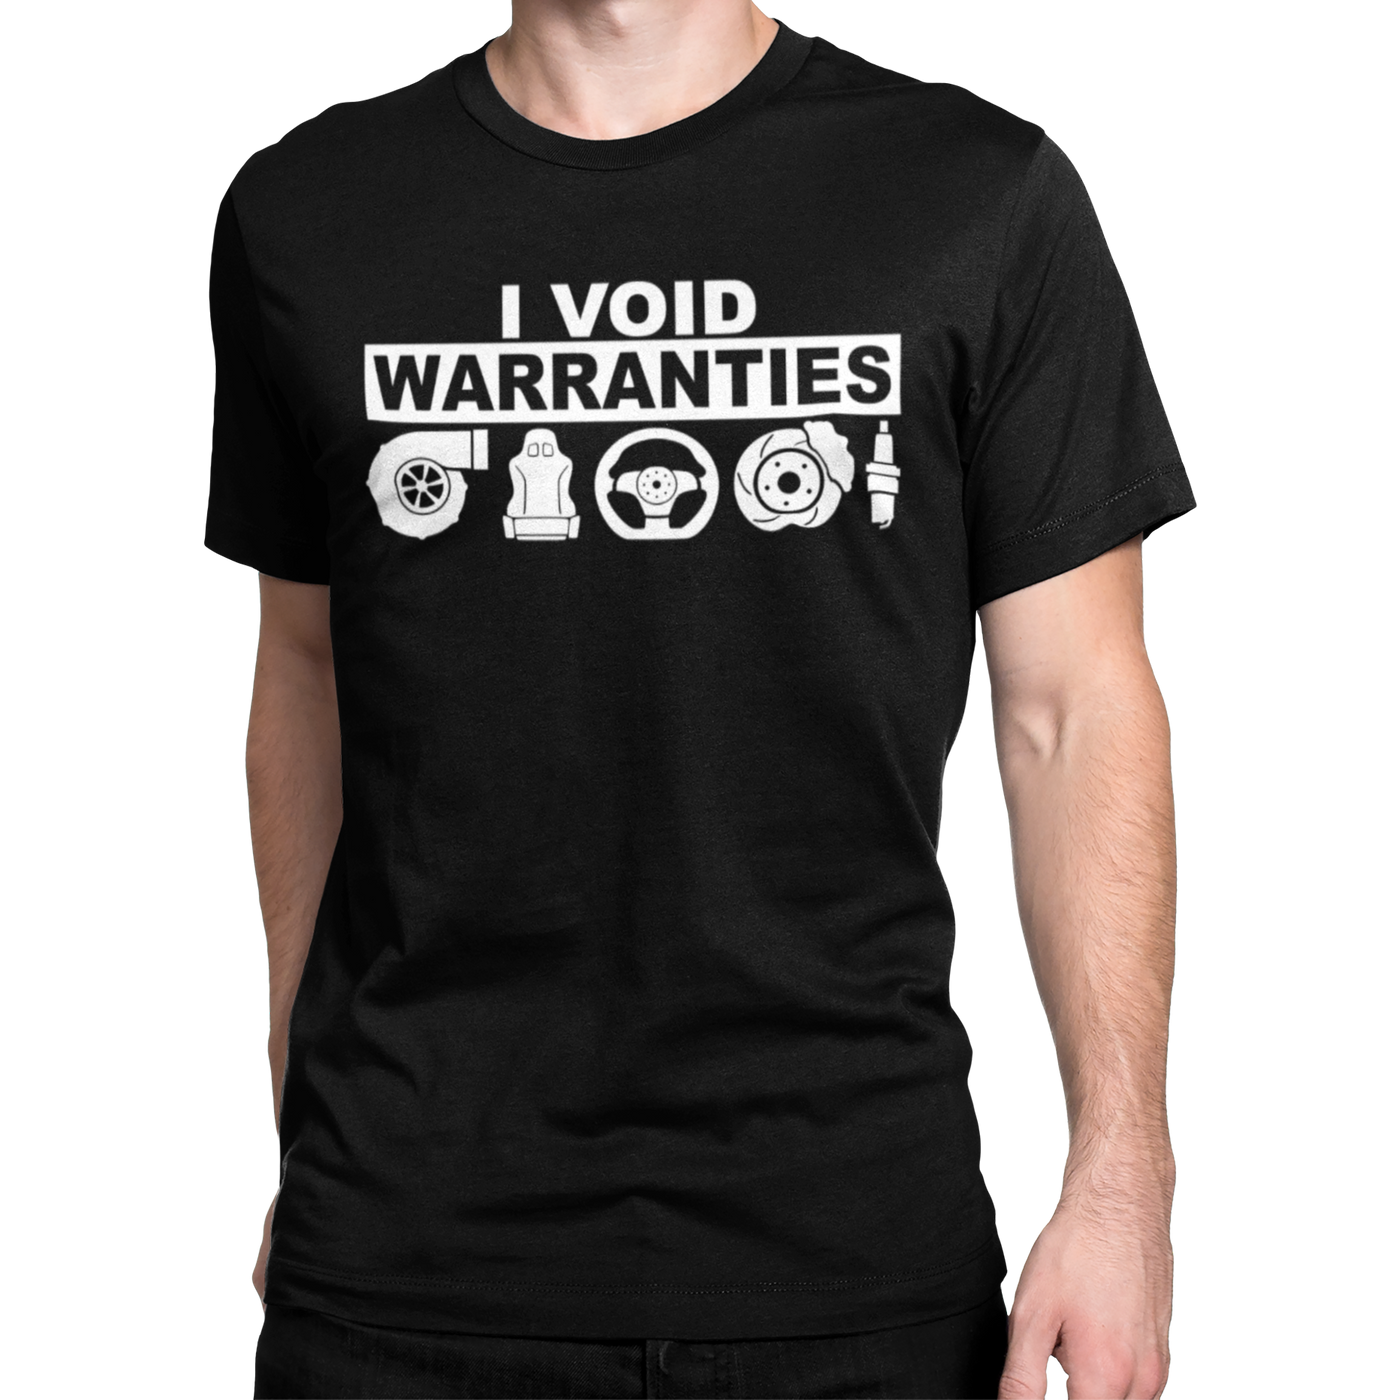 I VOID WARRANTIES T-shirt